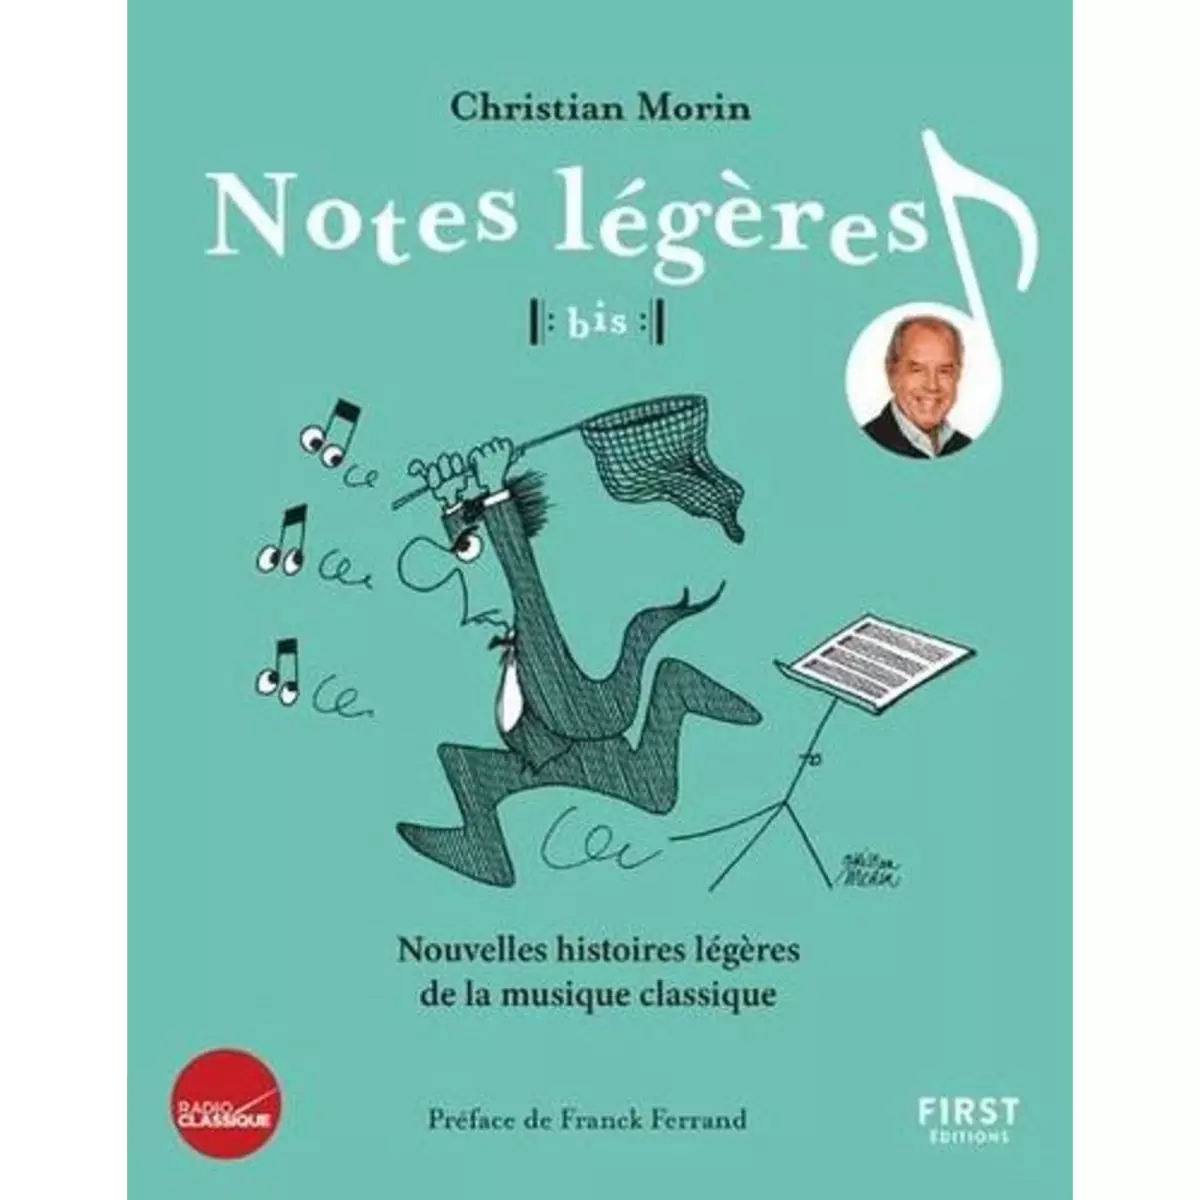  NOTES LEGERES, BIS ! NOUVELLES HISTOIRES LEGERES DE LA MUSIQUE CLASSIQUE, Morin Christian